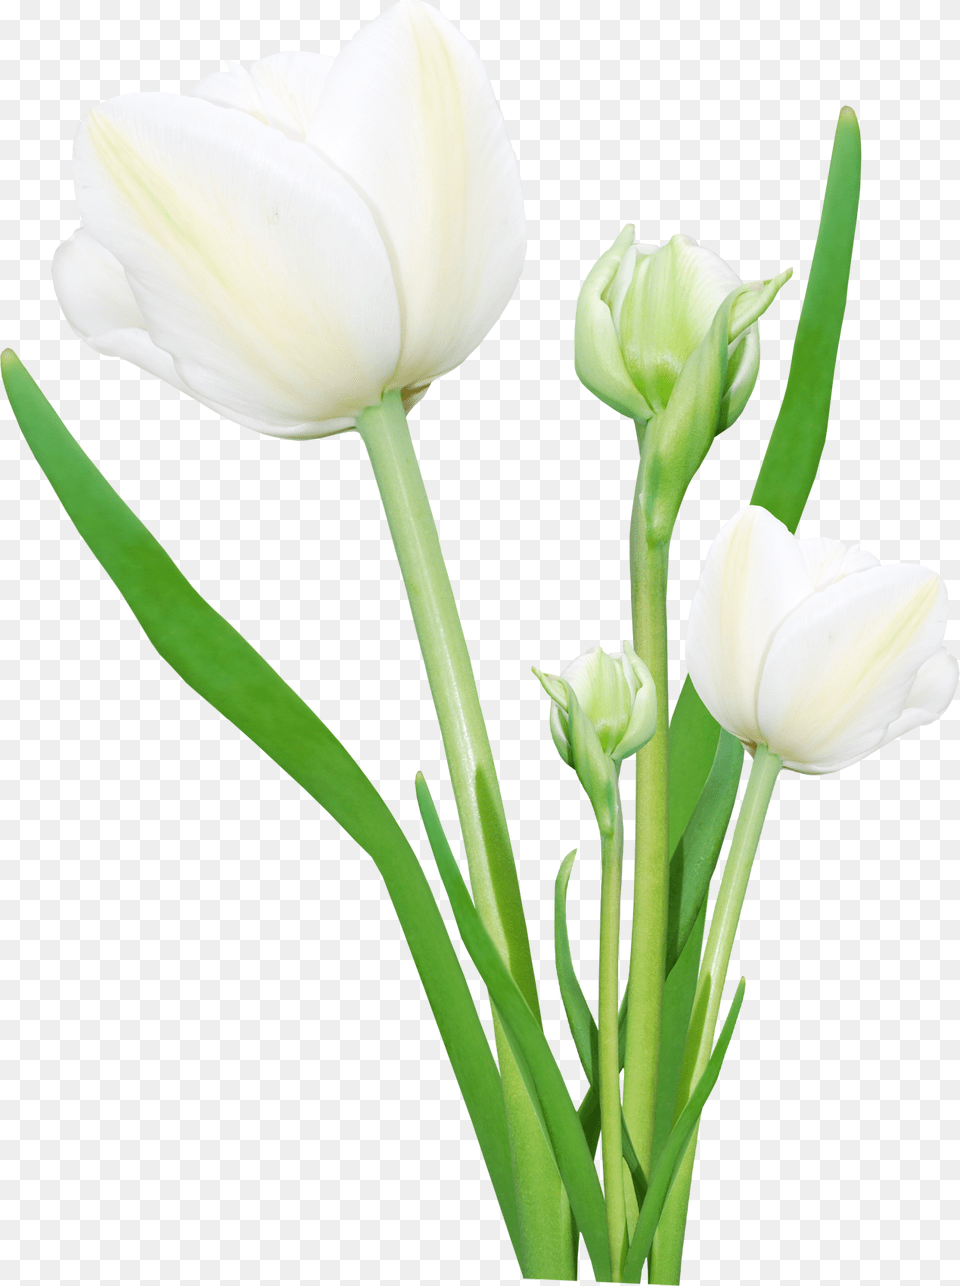 Bouquet, Flower, Plant, Tulip, Petal Free Transparent Png